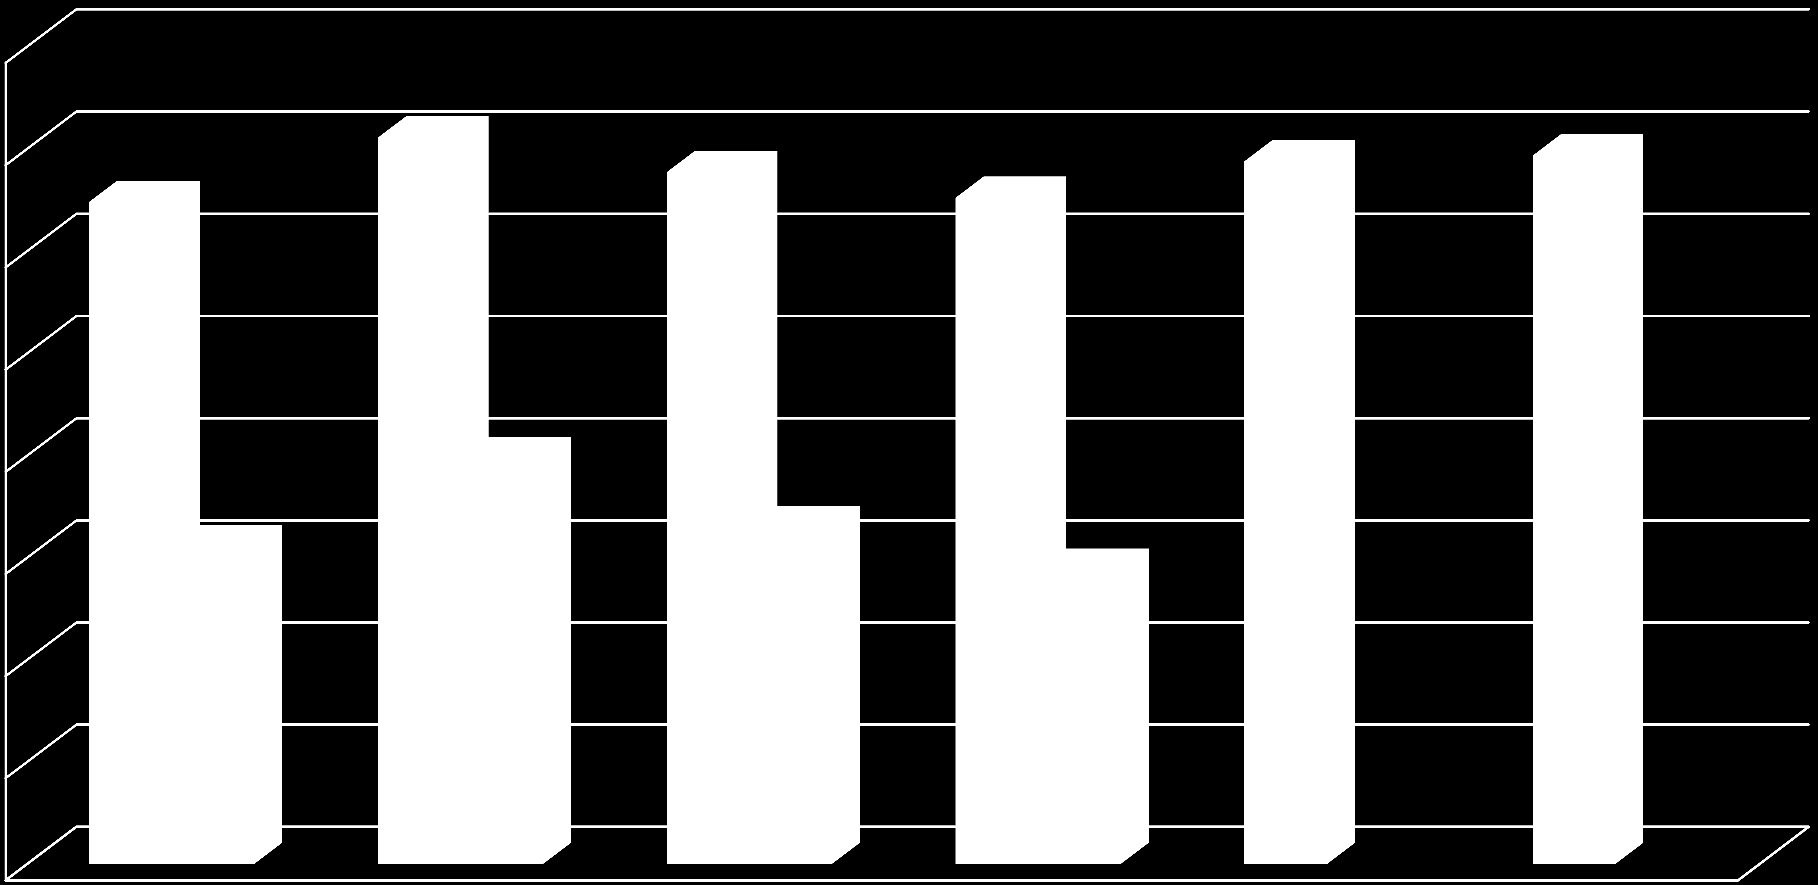 Evolutie werkzaamheidsgraad (20-64 jaar), 2009-2014, Vlaams Gewest 73,0 72,0 71,0 71,5 71,9 70,0